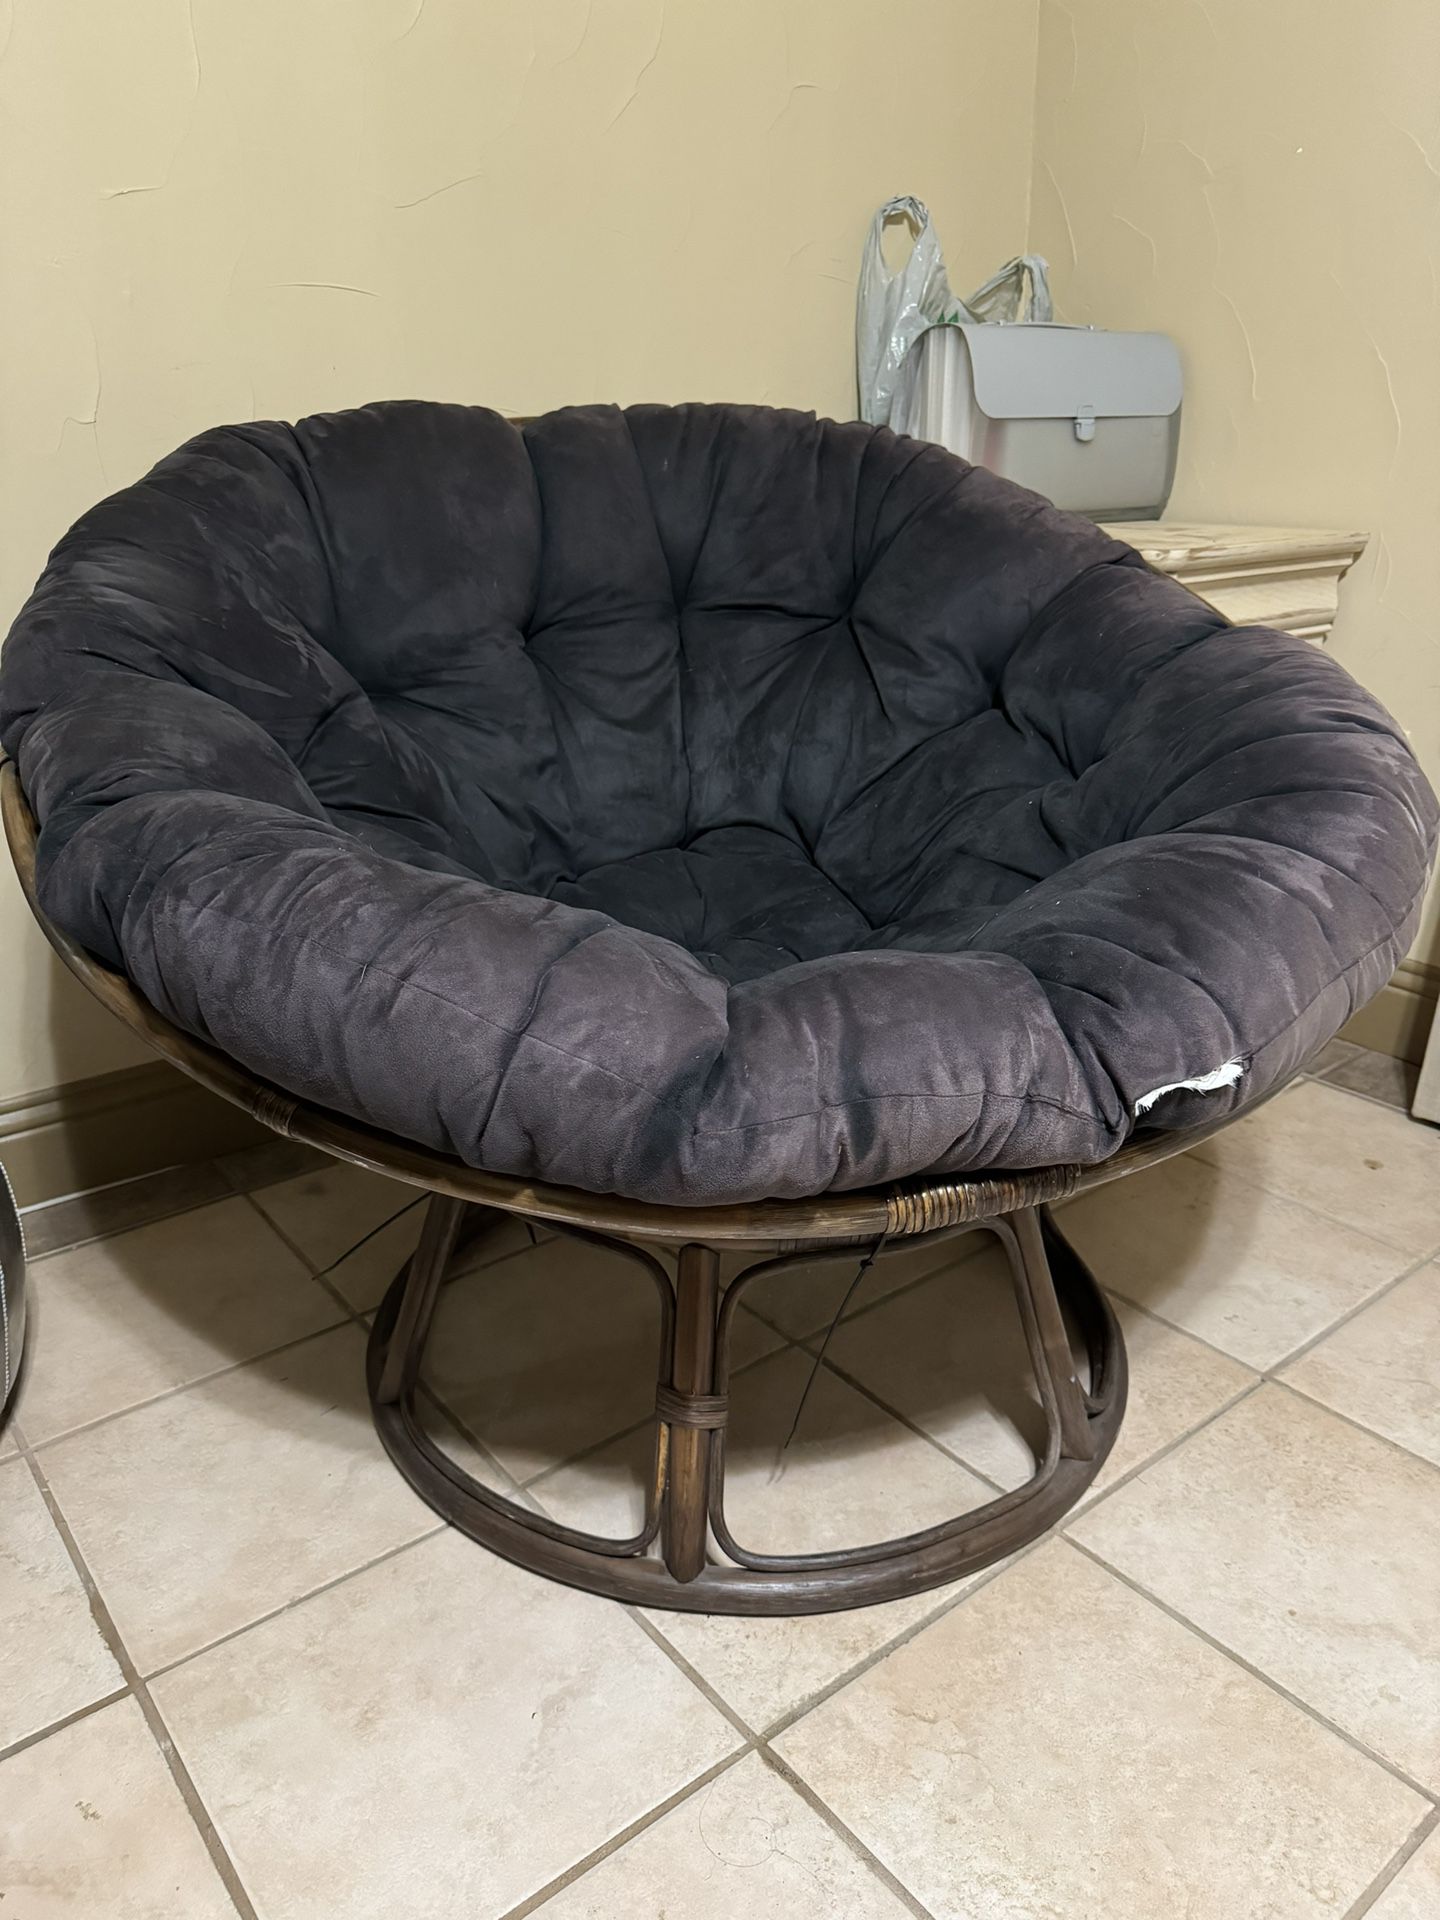 Papasan Chair With Cushion